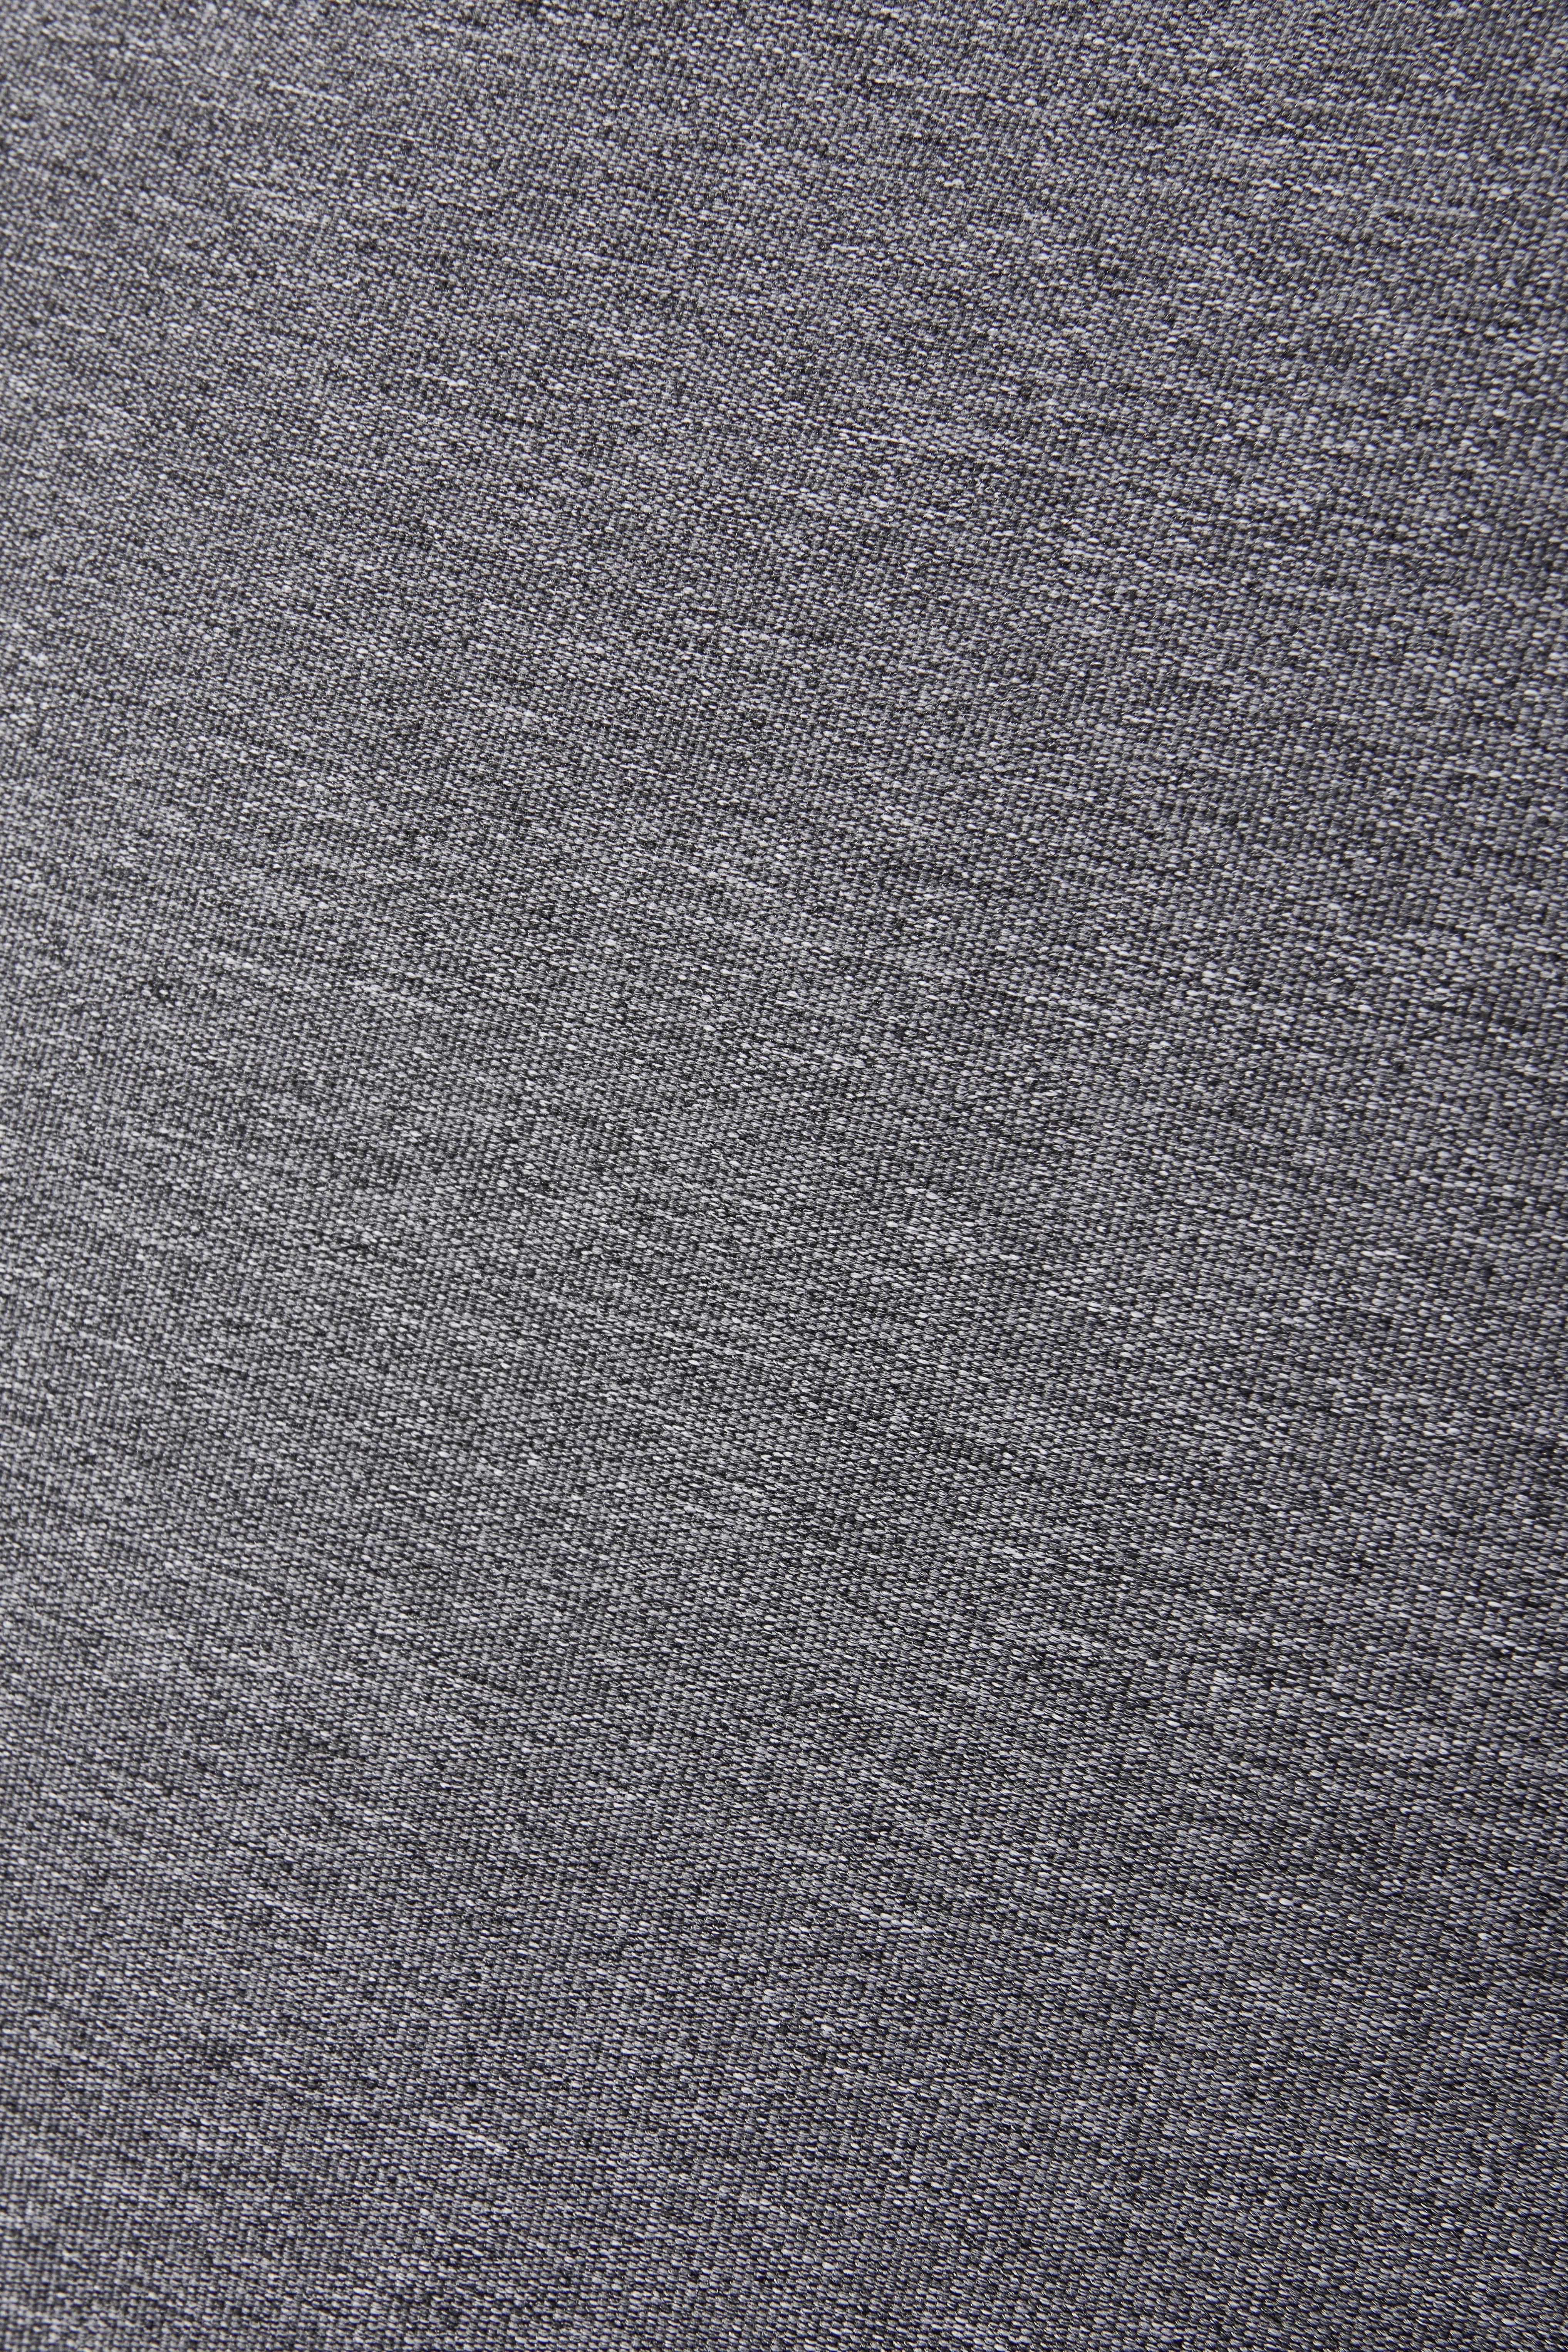 Loungegarnitur 4-Teilig Lima Stahl/Textil mit Kissen - Anthrazit/Schwarz, MODERN, Glas/Textil (176/241cm) - Beldano